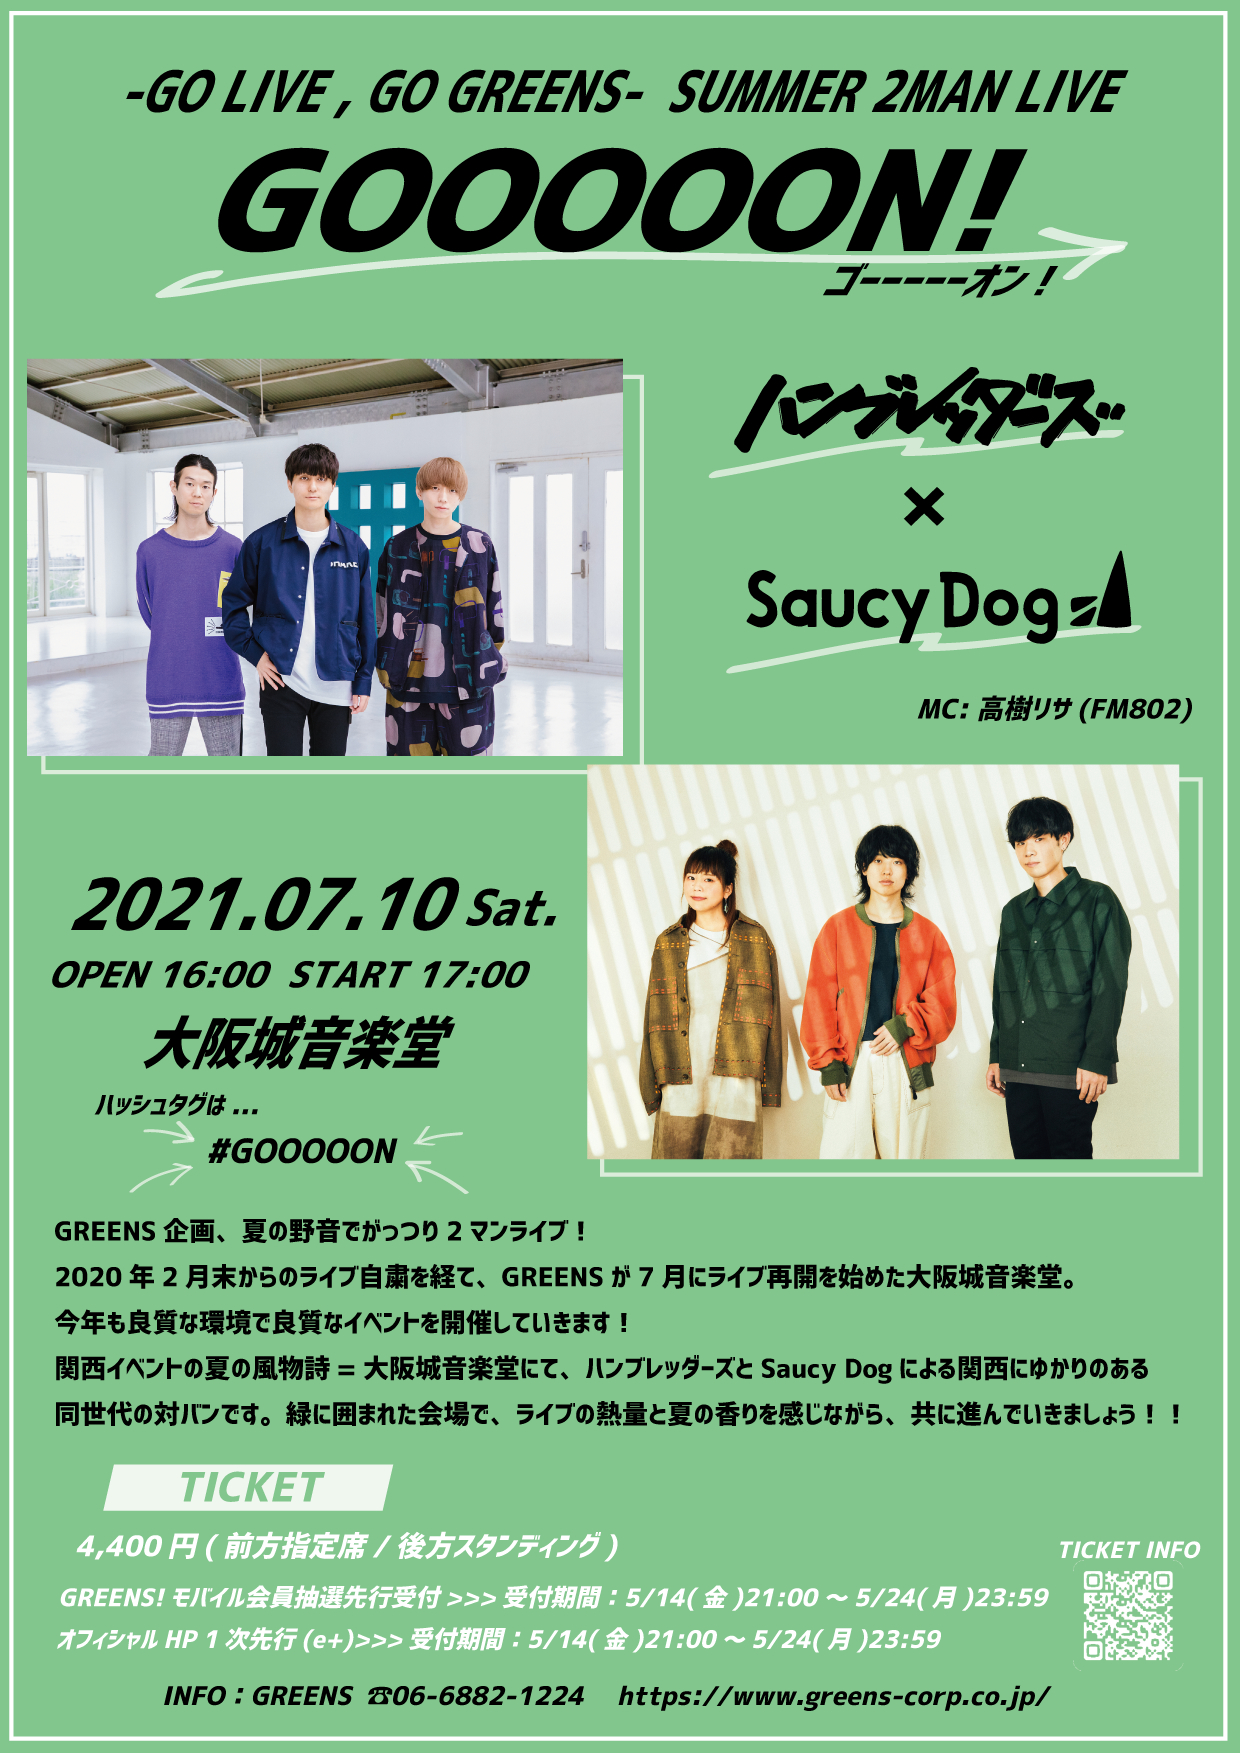 Saucy Dog ハンブレッダーズの2マンライブ Gooooon が大阪城音楽堂にて開催 Spice エンタメ特化型情報メディア スパイス